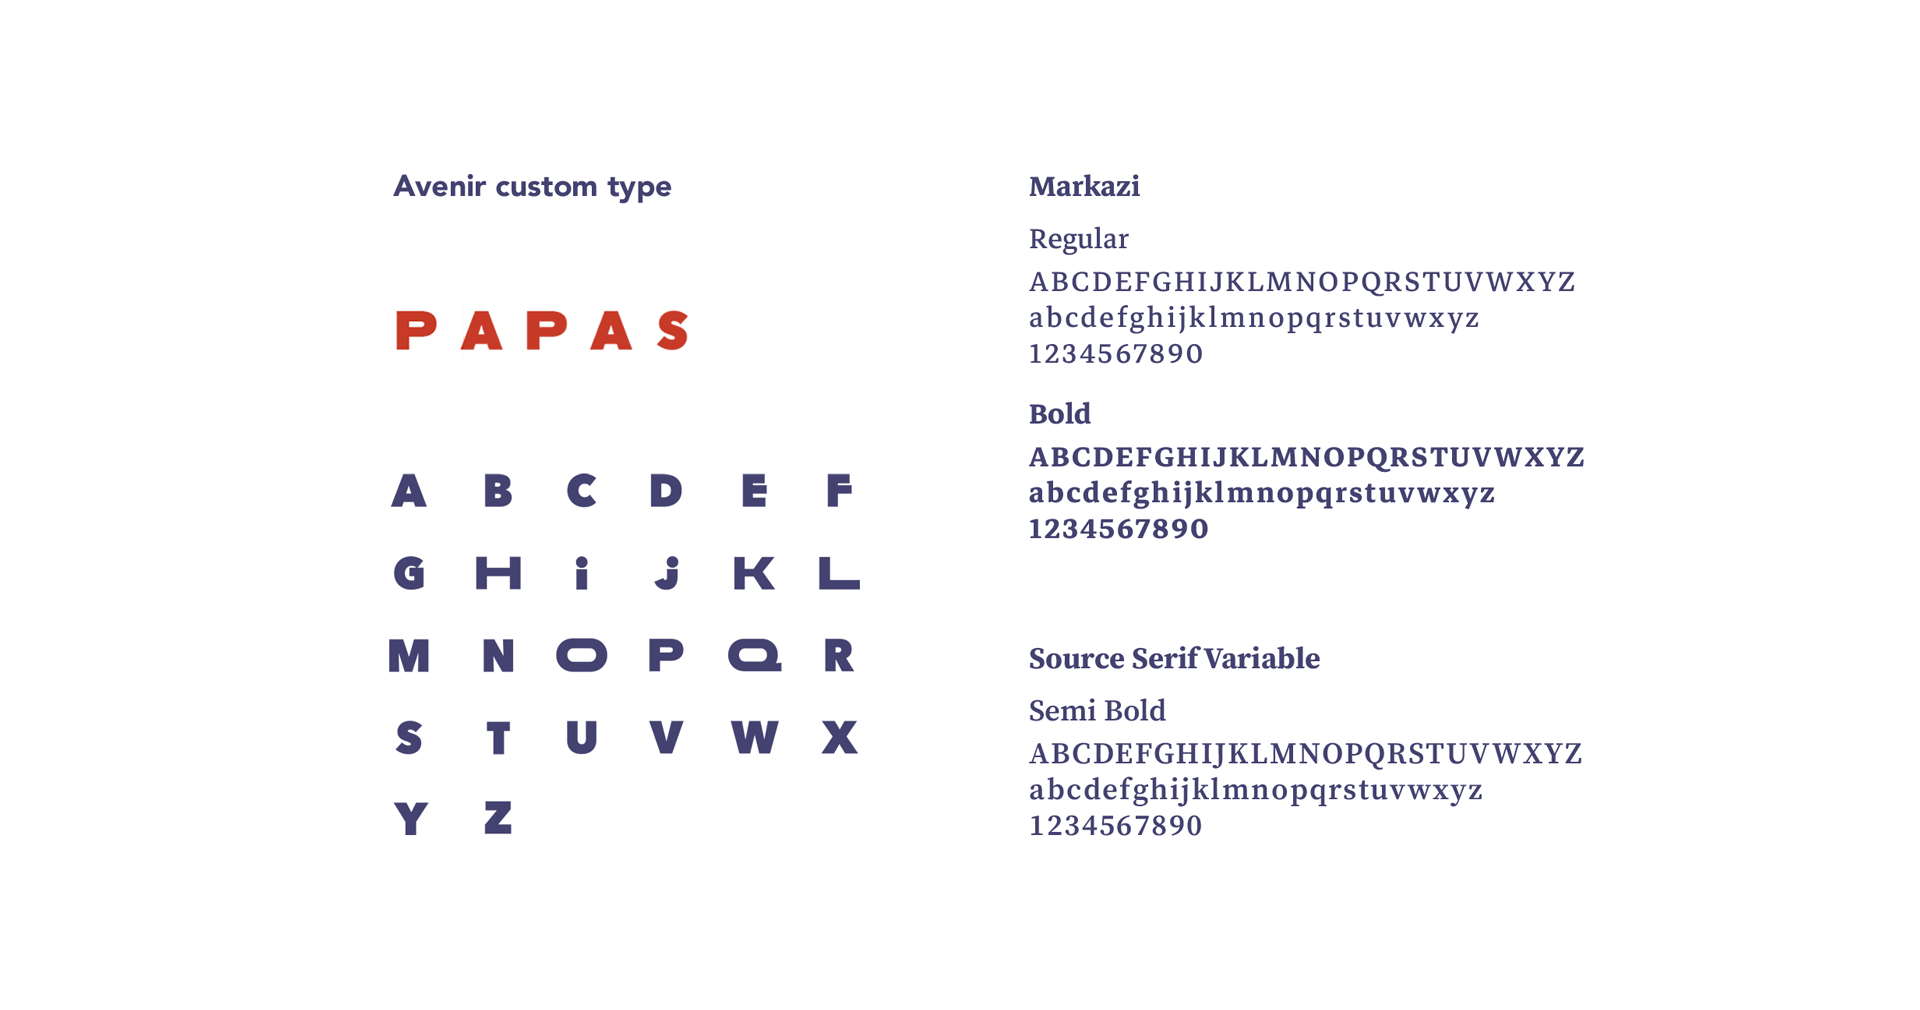 Papas Tacos - restaurant - Bordeaux - graphic identity - custom font